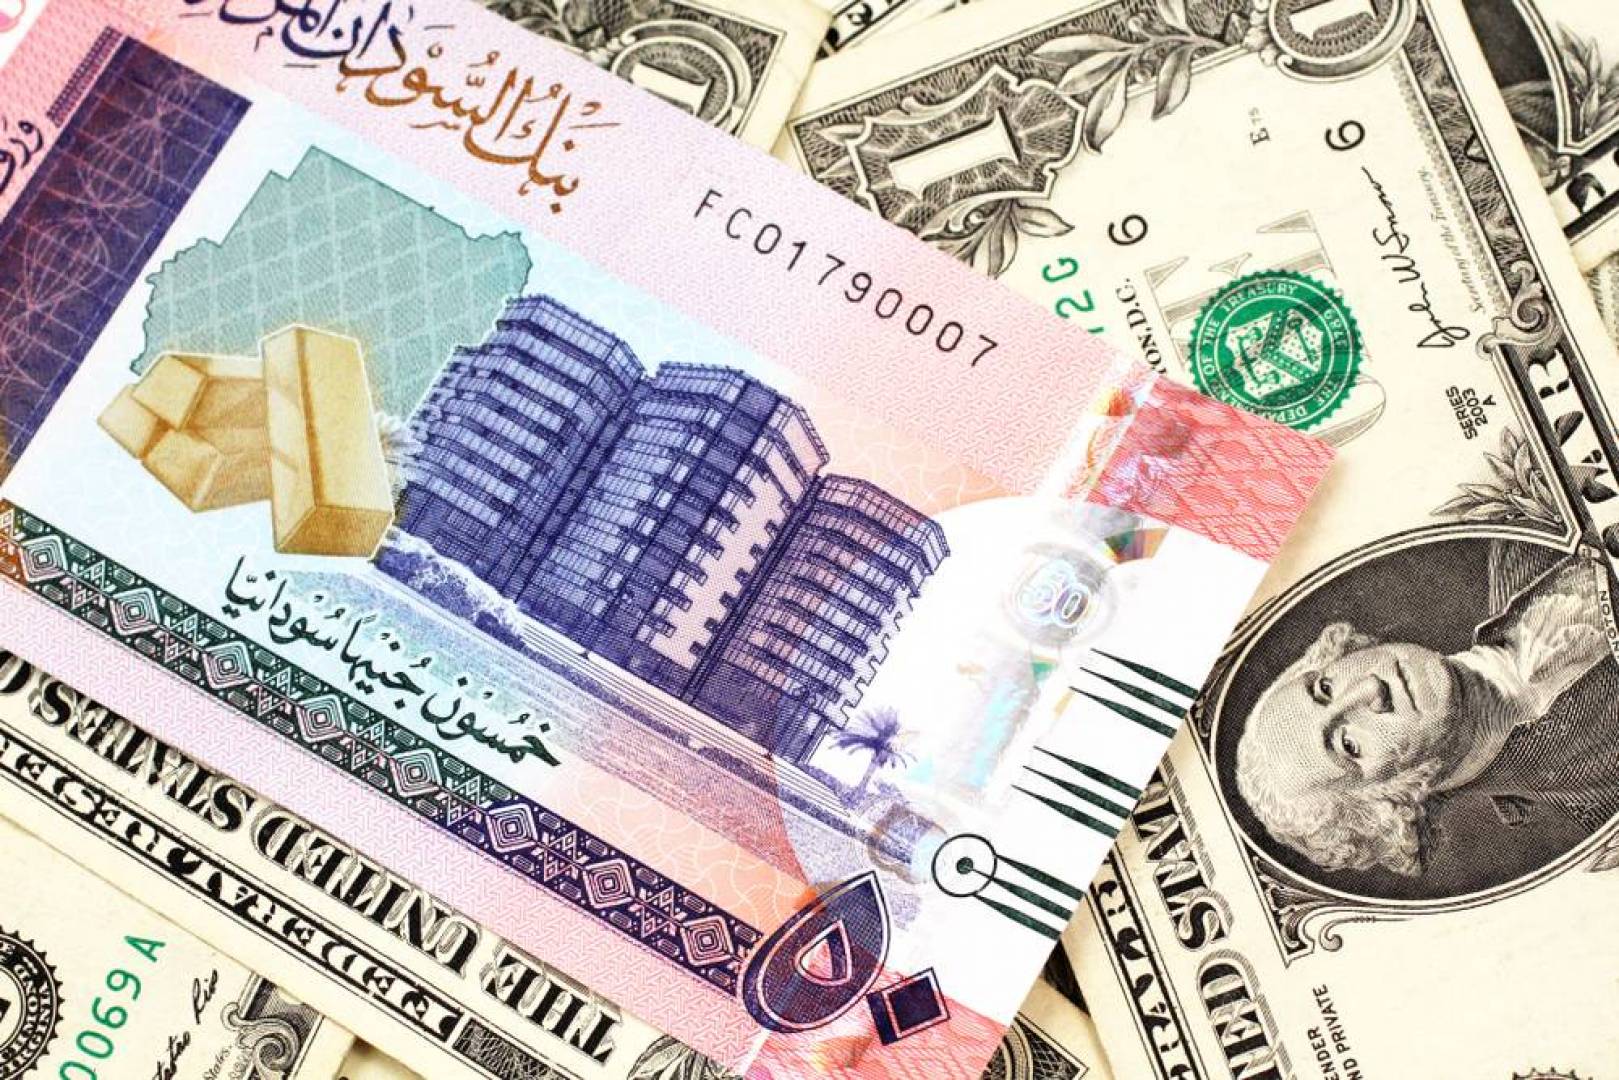 طالع الآن سعر الدولار في السودان اليوم السبت 3102020 سعر صرف الدولار